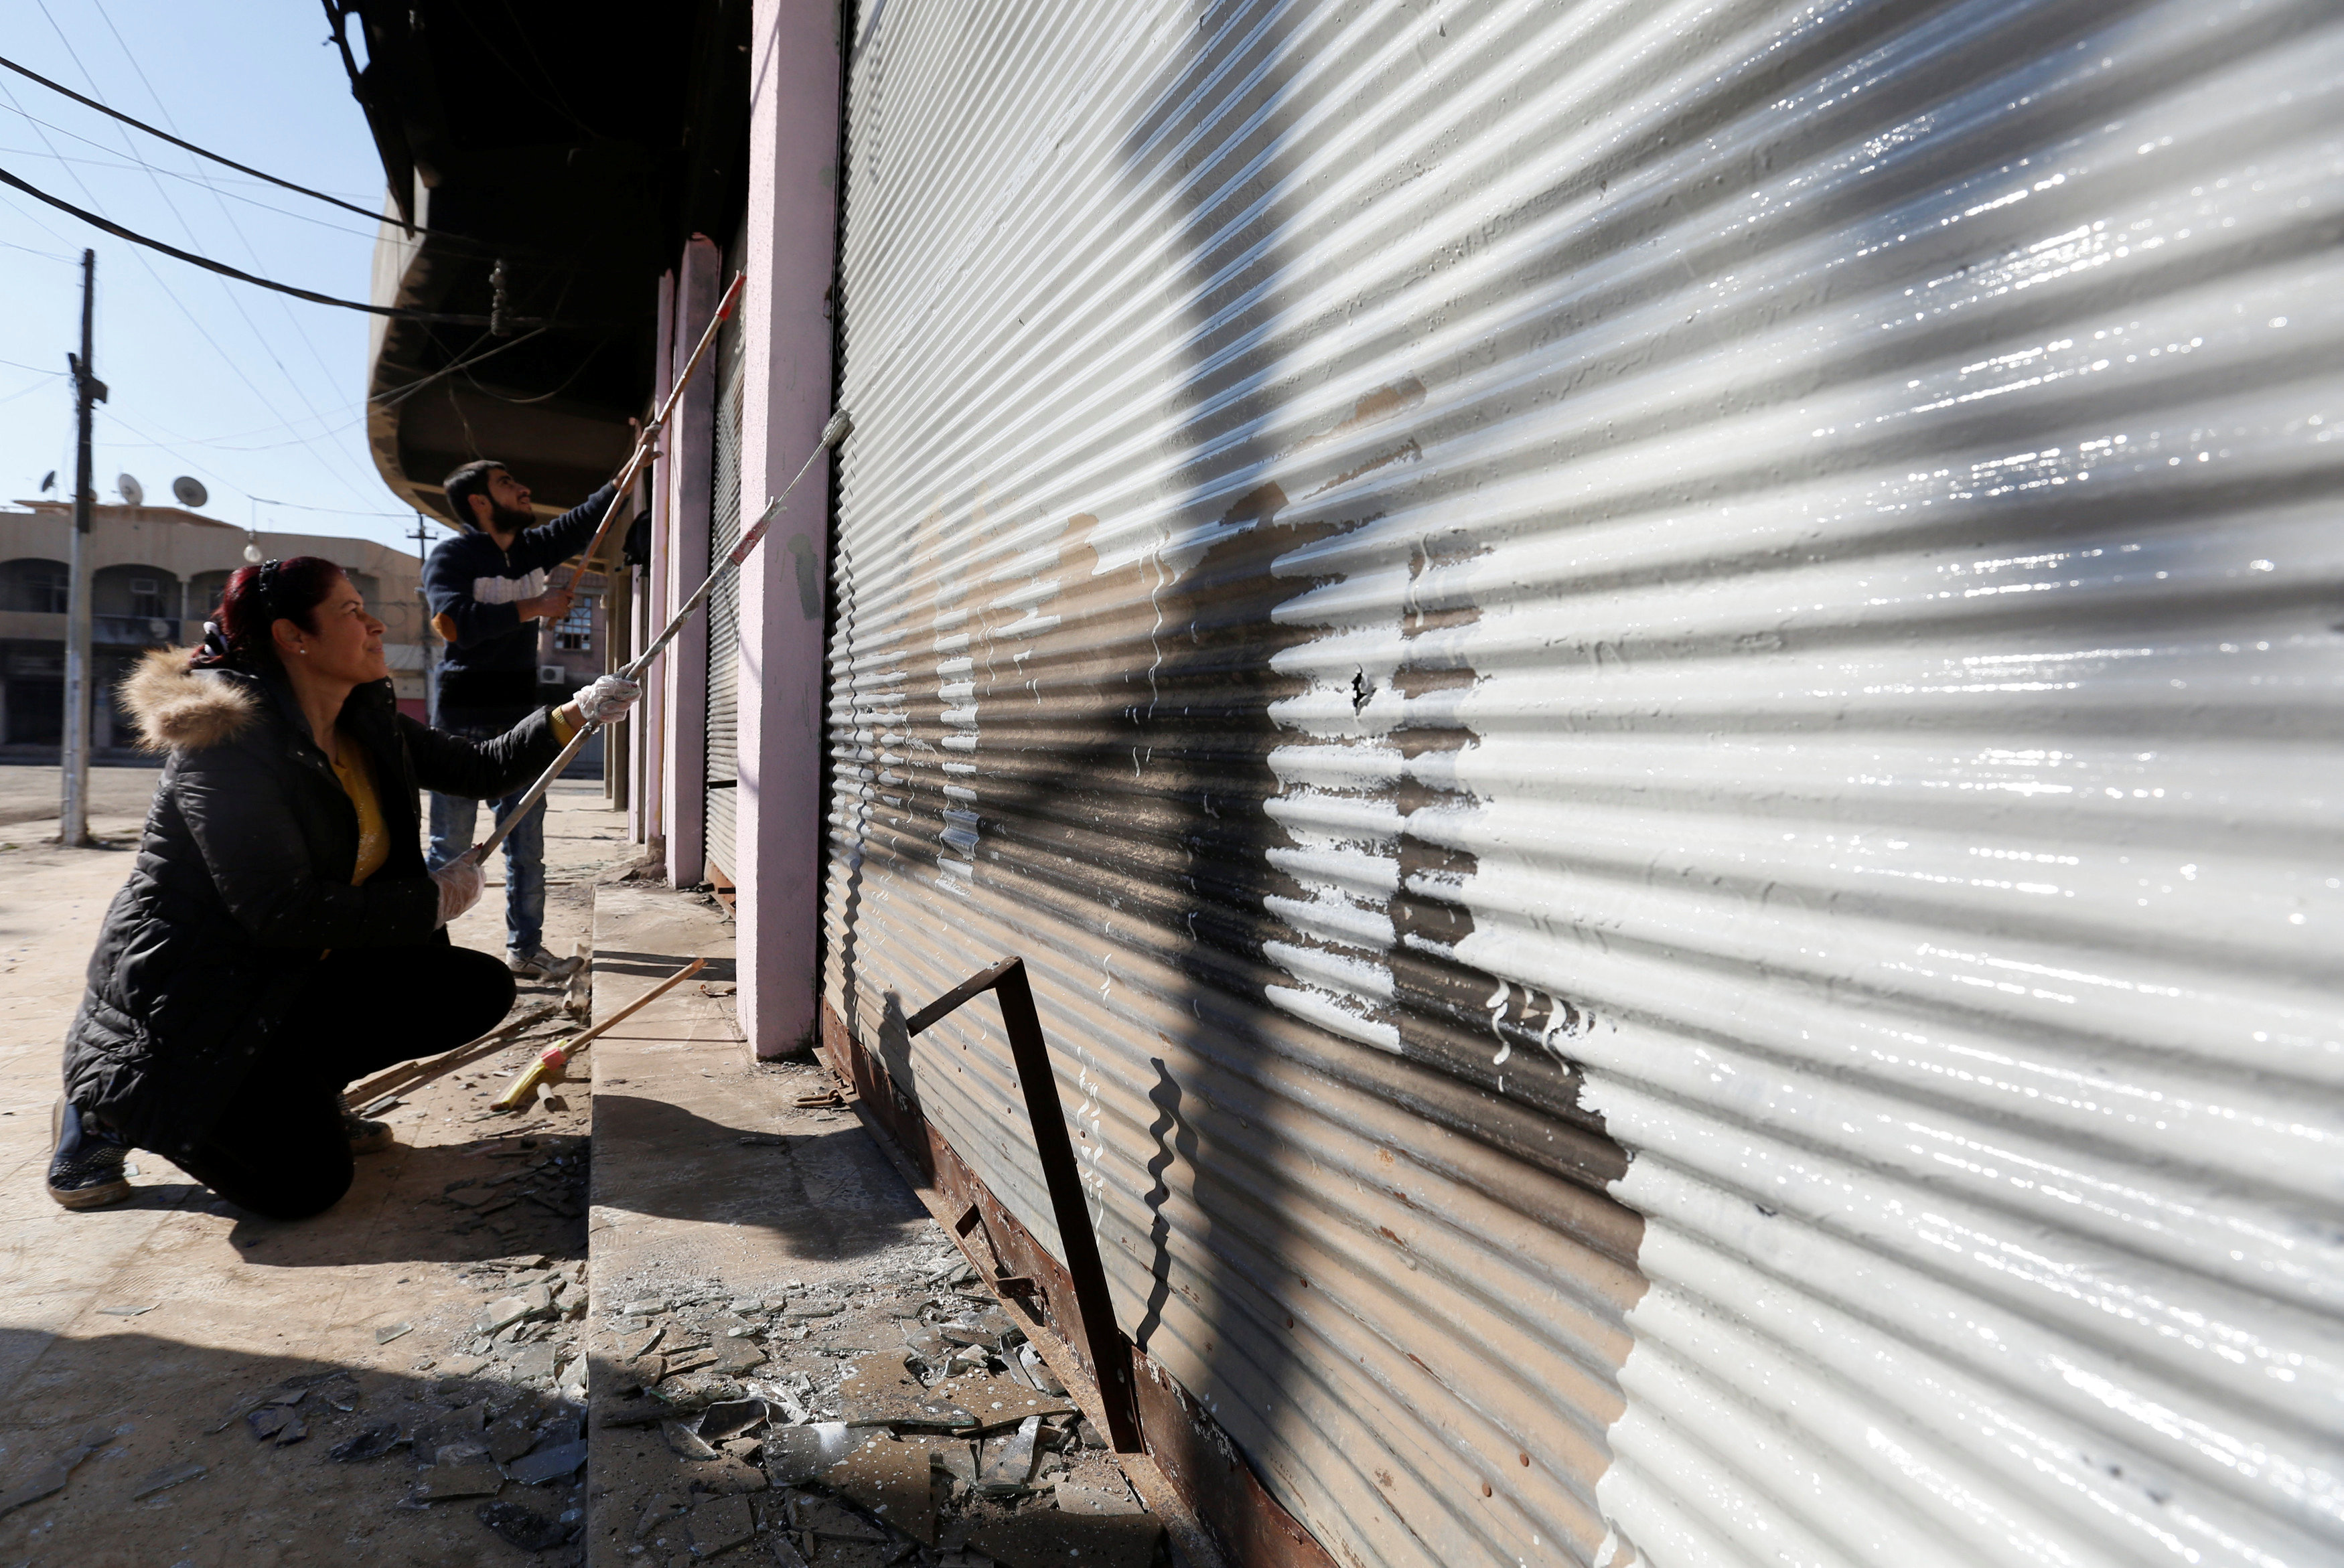 مواطنون عراقيين يقومون بطلاء واجهات المحلات لإزالة أثار عبارات داعش الإرهابية